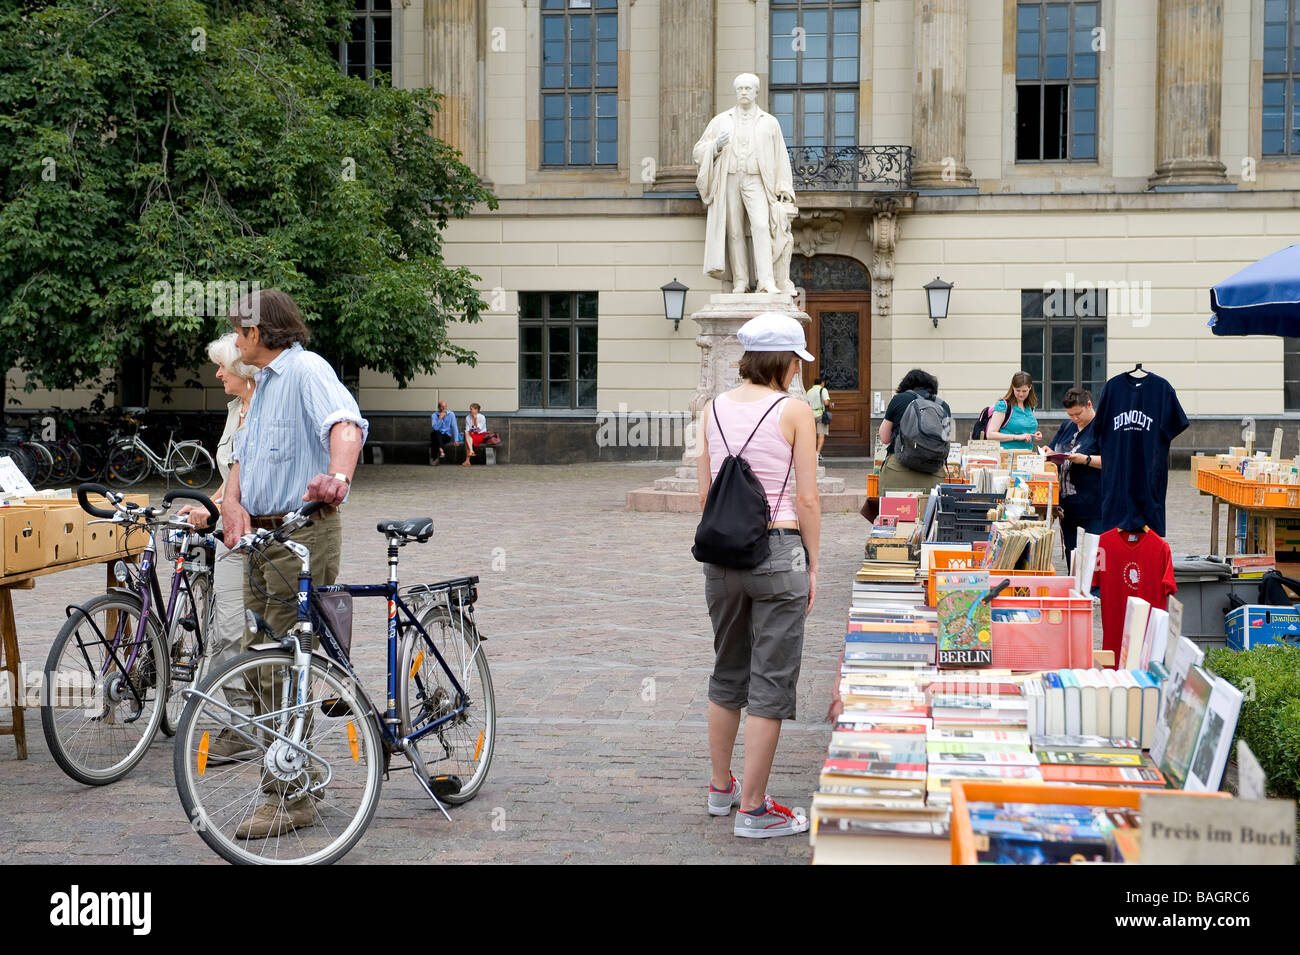 Alemania, Berlín Mitte, el bulevar Unter den Linden, libreros de la Universidad Humboldt Foto de stock